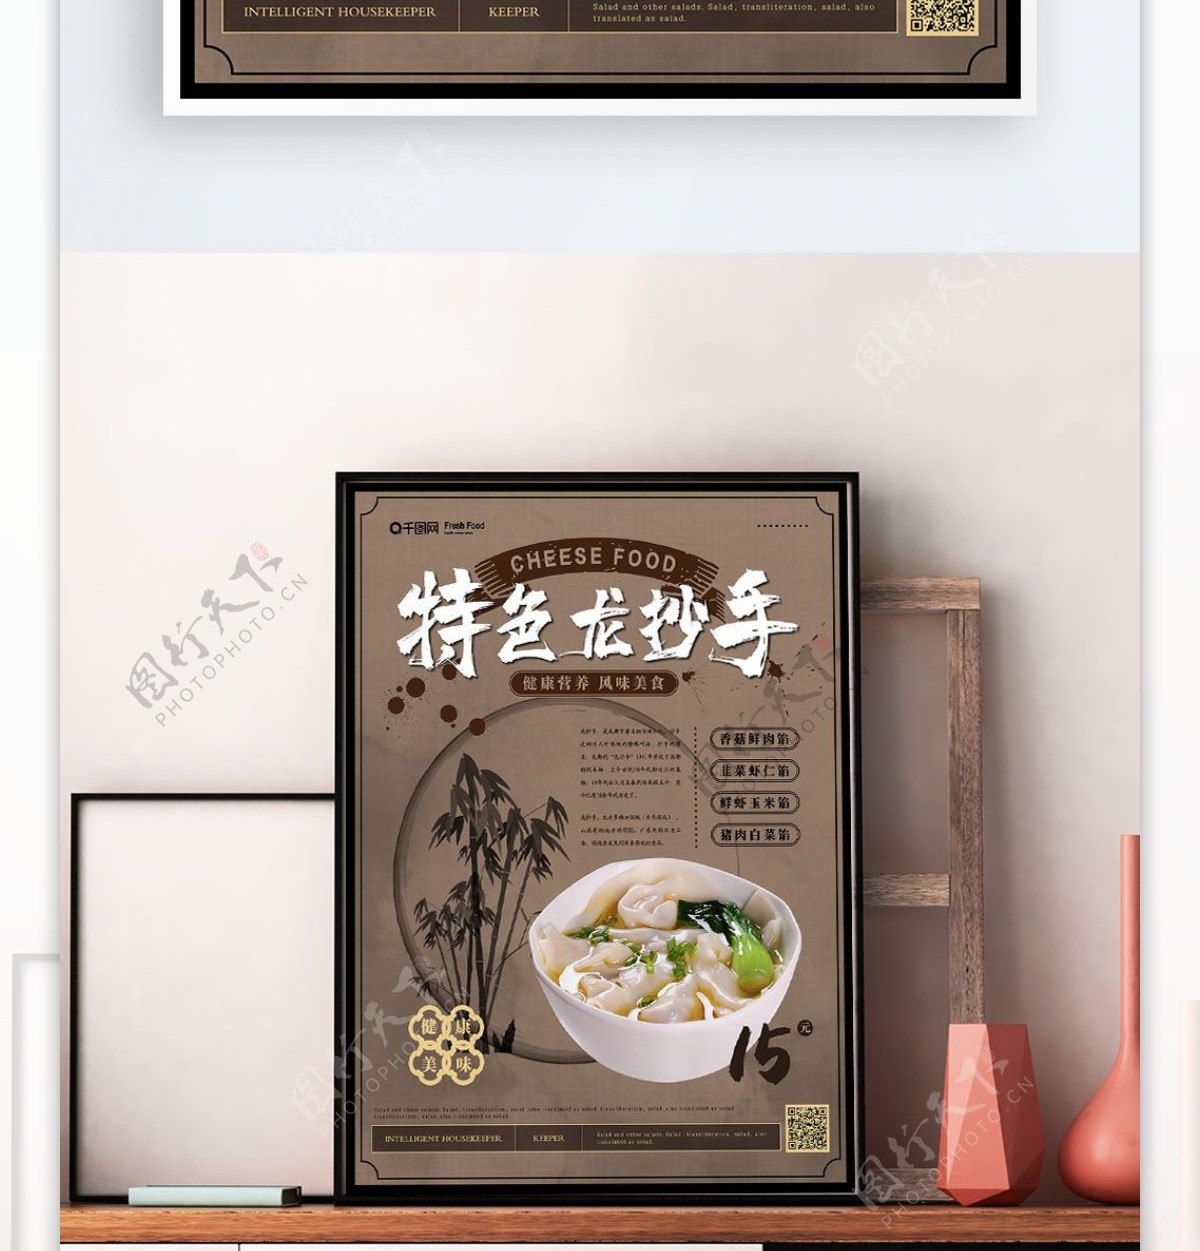 简约中国风美味龙抄手海报